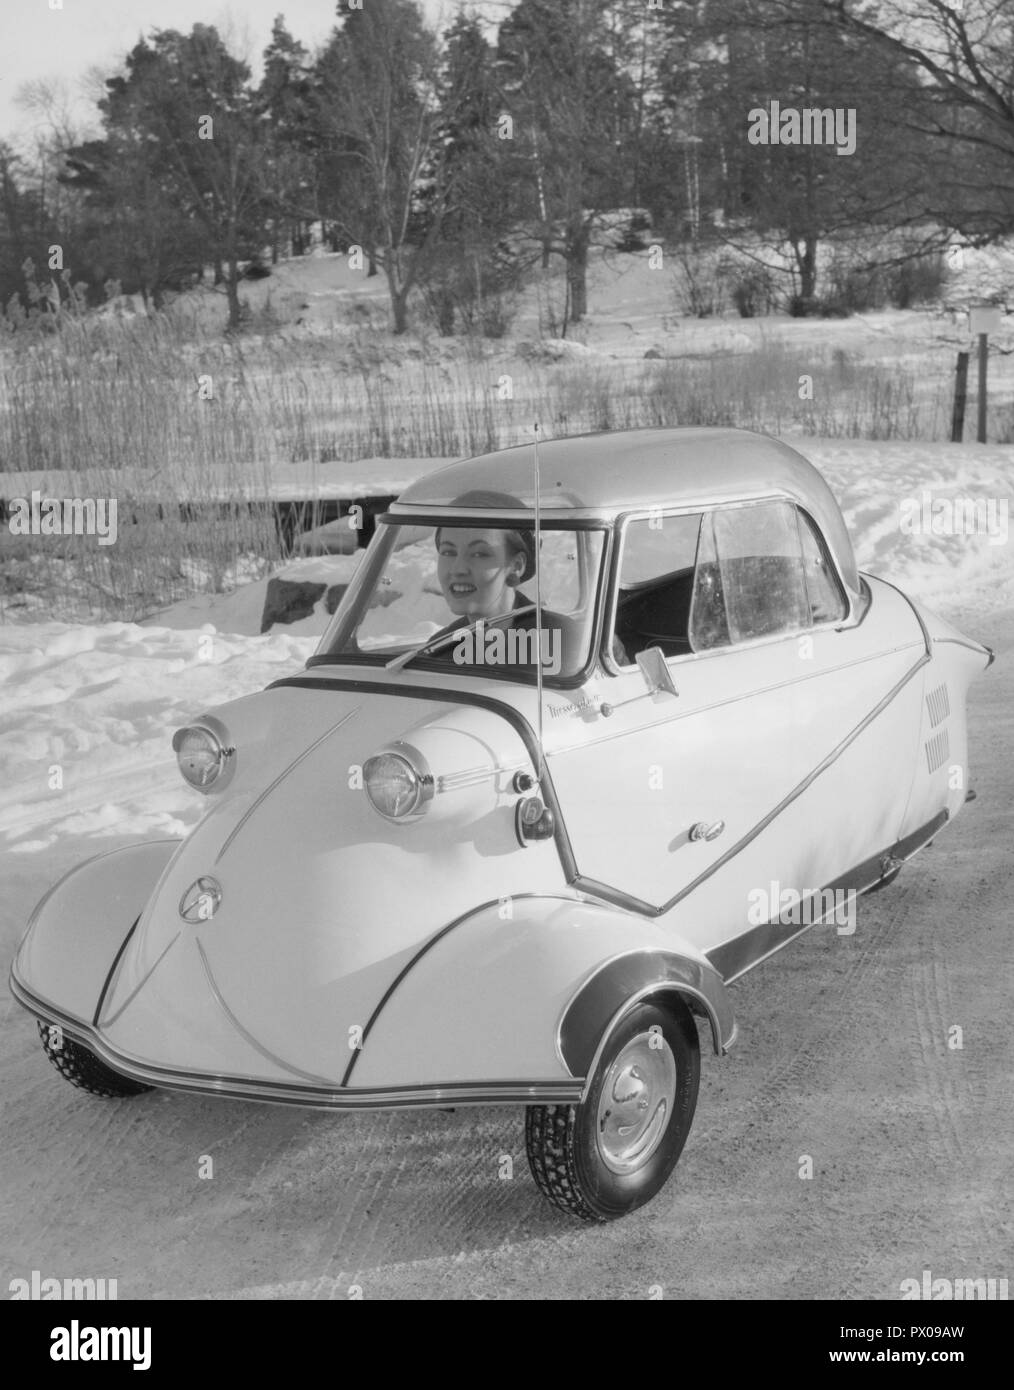 La conduite en hiver dans les années 1950. Une jeune femme est le moteur de la berline allemande Messerschmitt KE200. Une petite voiture à trois roues avec suffisamment de place pour mettre en place deux adultes et un enfant dans la voiture. La voiture a été fabriquée entre 1955-1964. Suède 1955 Banque D'Images